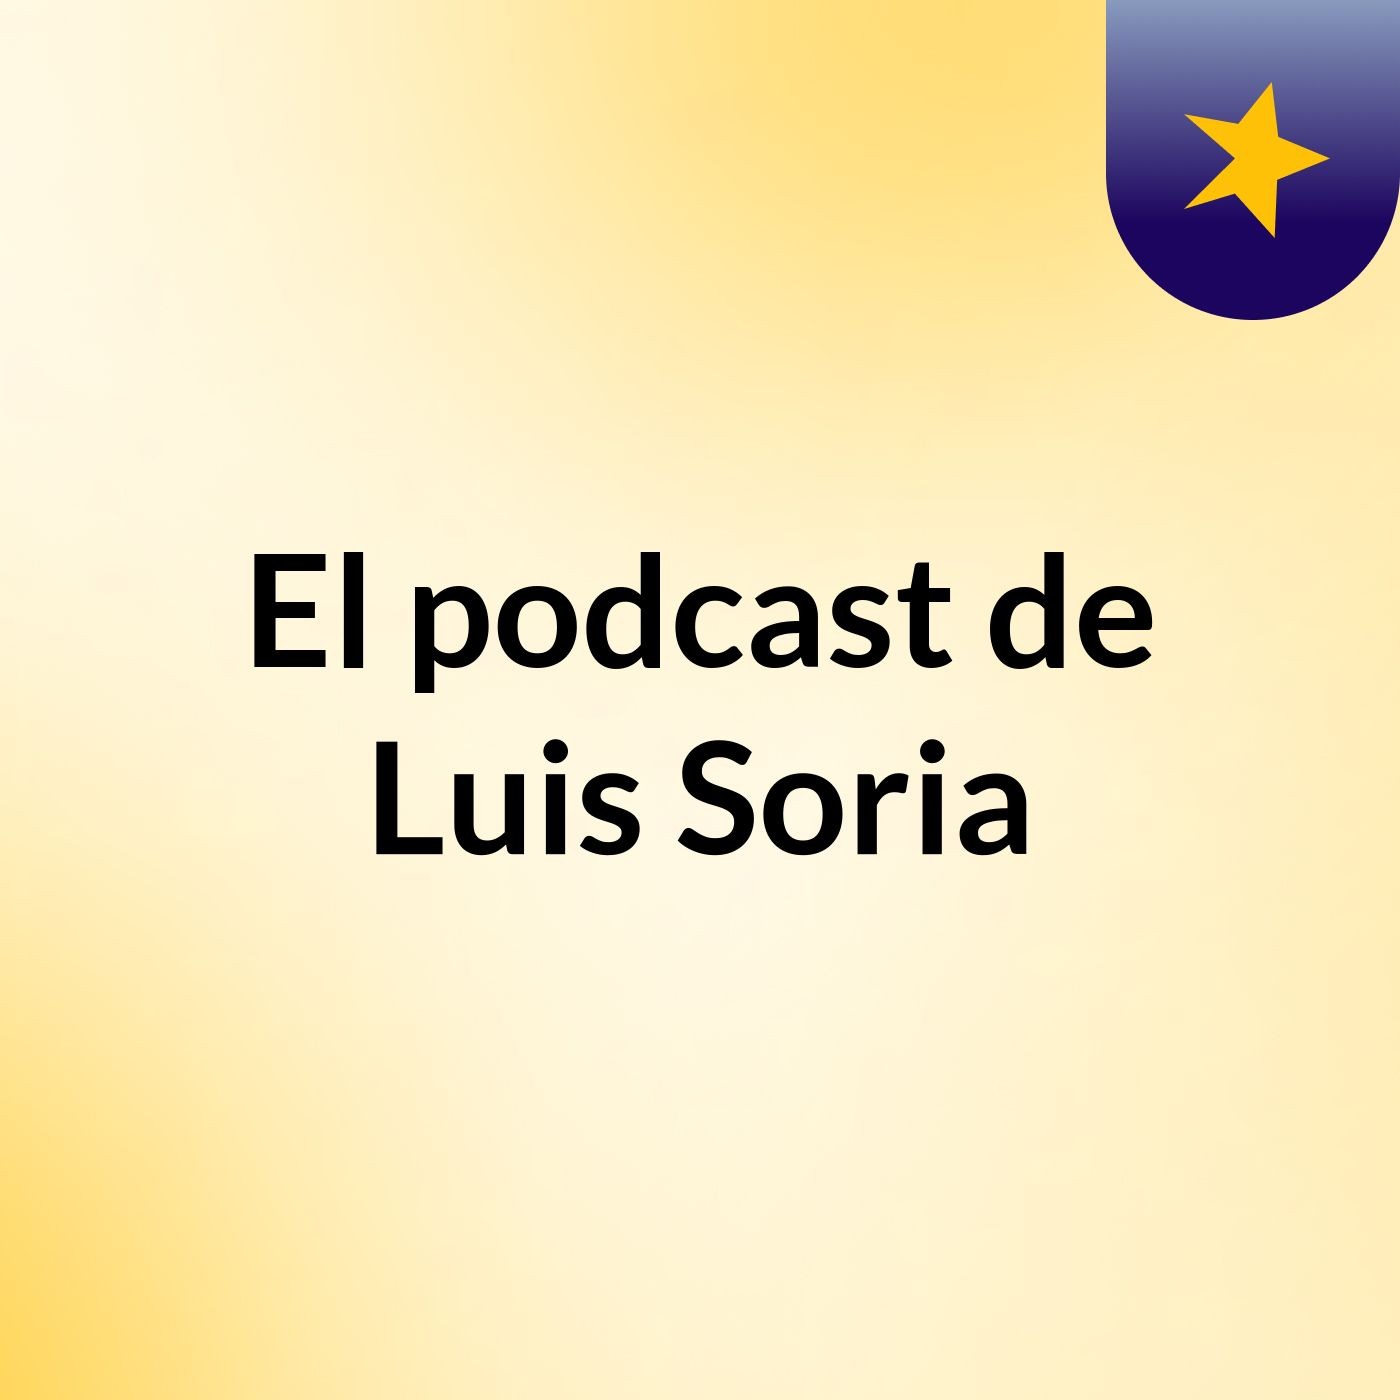 El podcast de Luis Soria